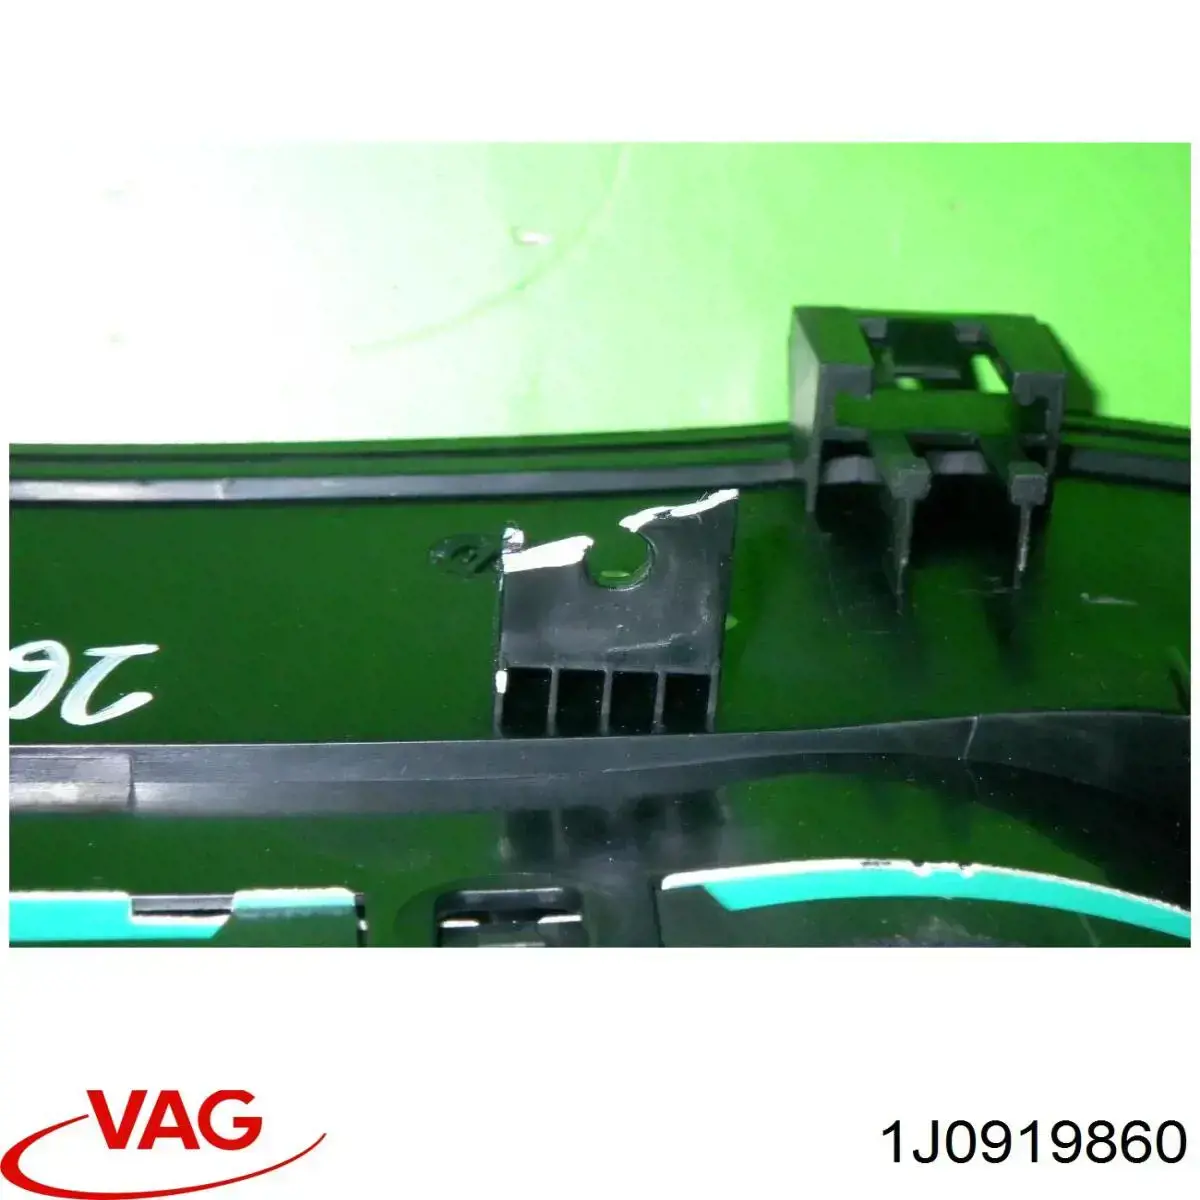 1J0919860V VAG painel de instrumentos (quadro de instrumentos)